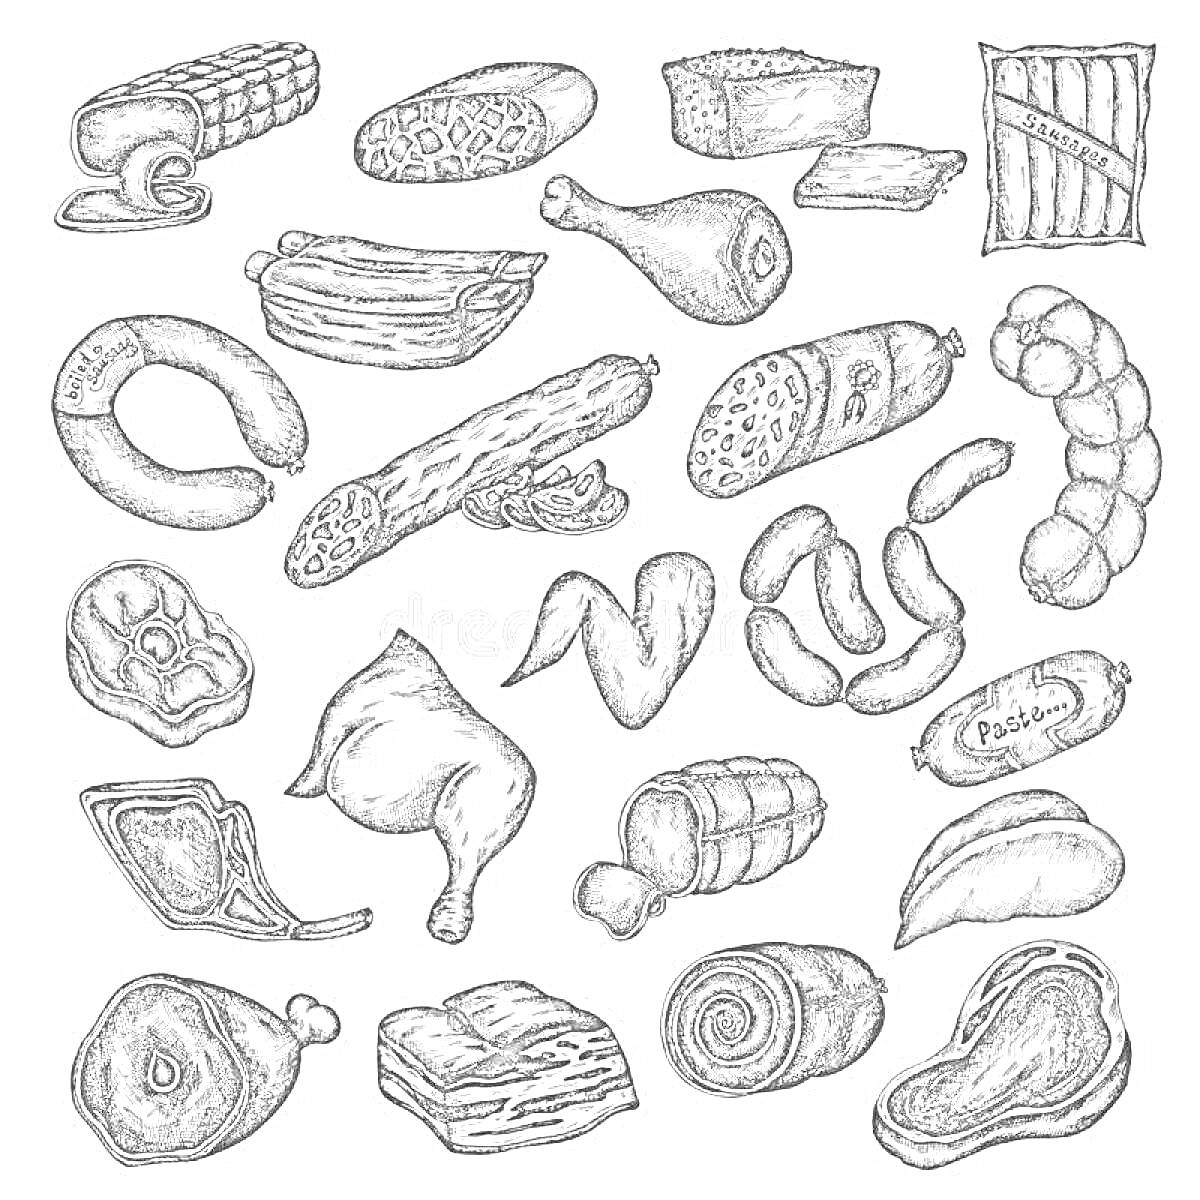 Раскраска Ассорти из мясных продуктов (колбаса, сосиски, бекон, окорок, куриные крылья, свиные ребрышки, стейк, грудинка и другие изделия)